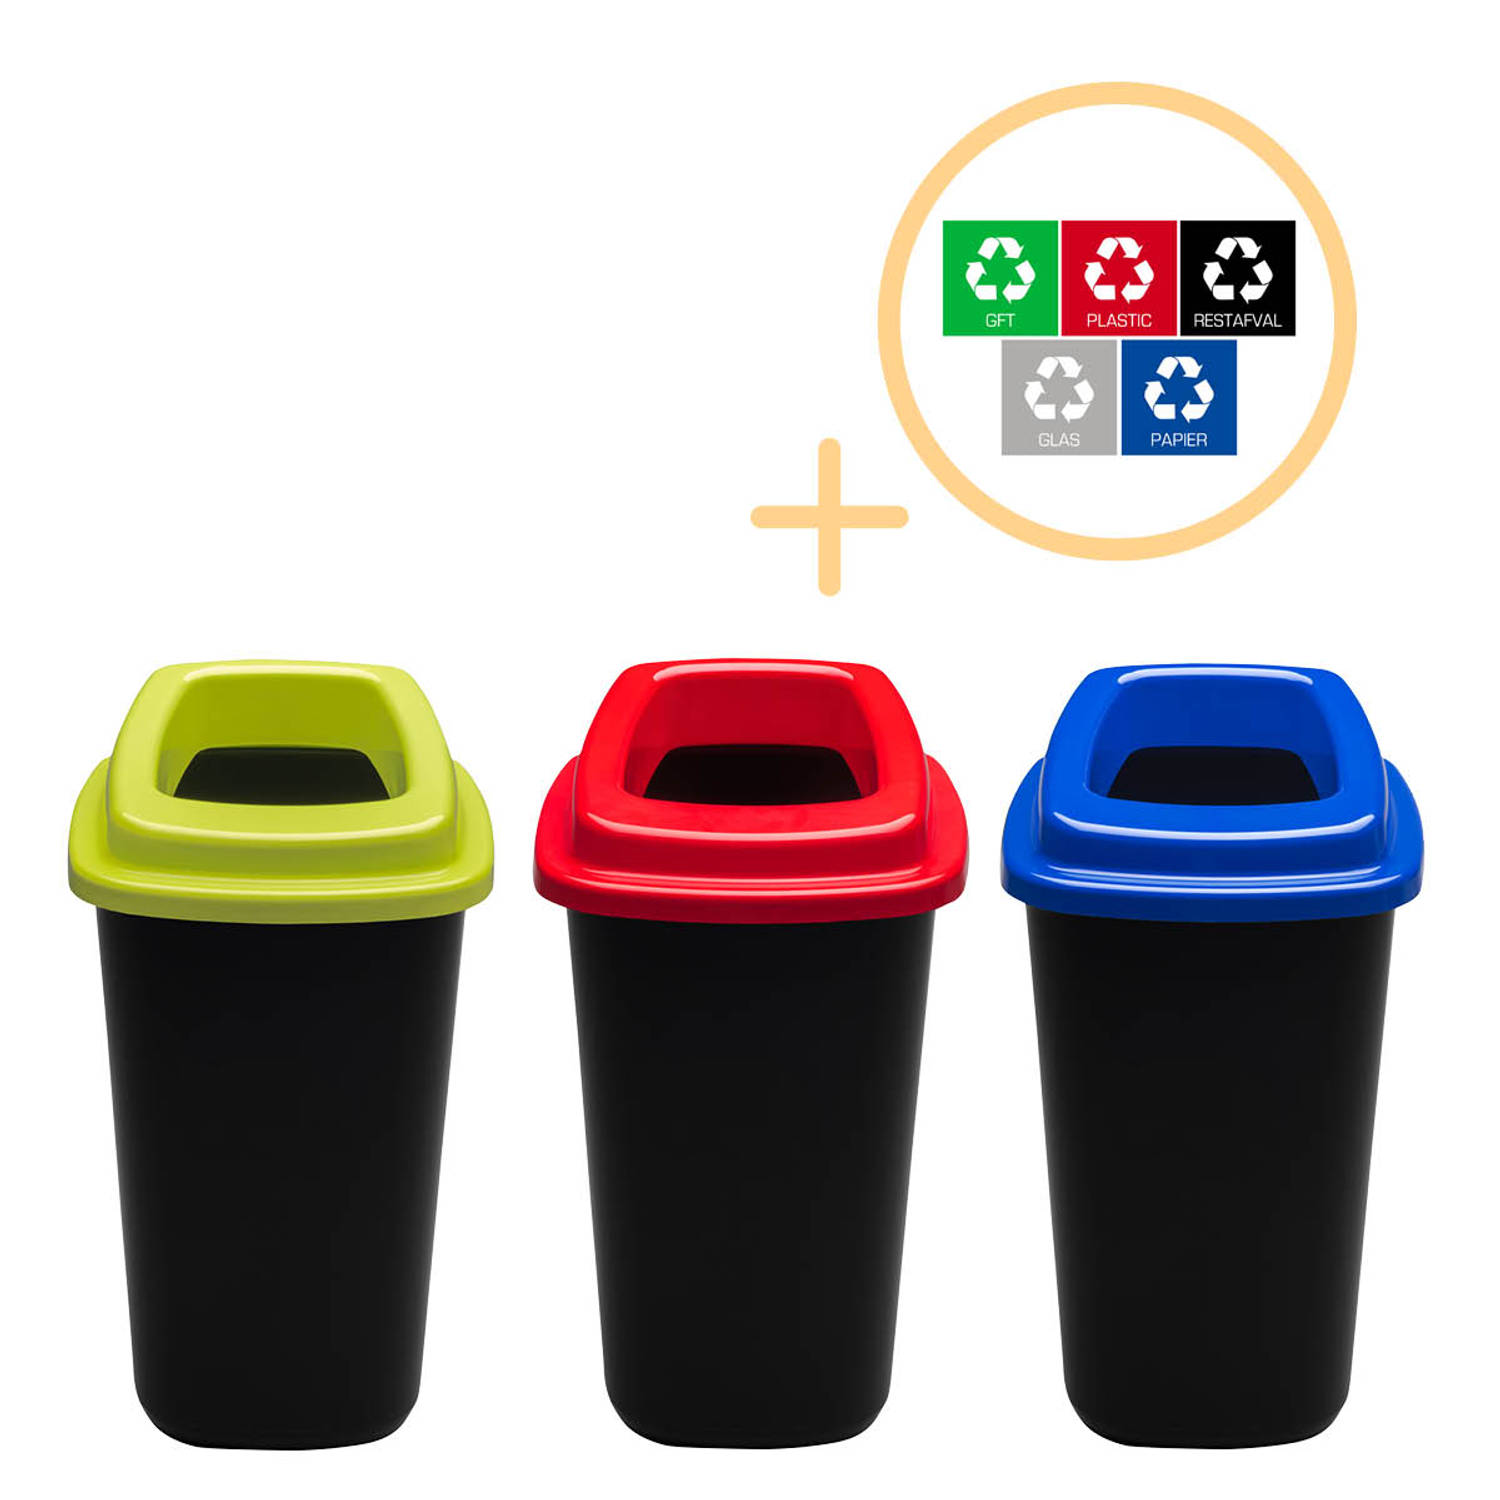 Plafor Sort Bin, Prullenbak voor afvalscheiding - 45L – Set van 3, Blauw/Groen/Rood - Inclusief 5-delige Stickerset - Recyclen